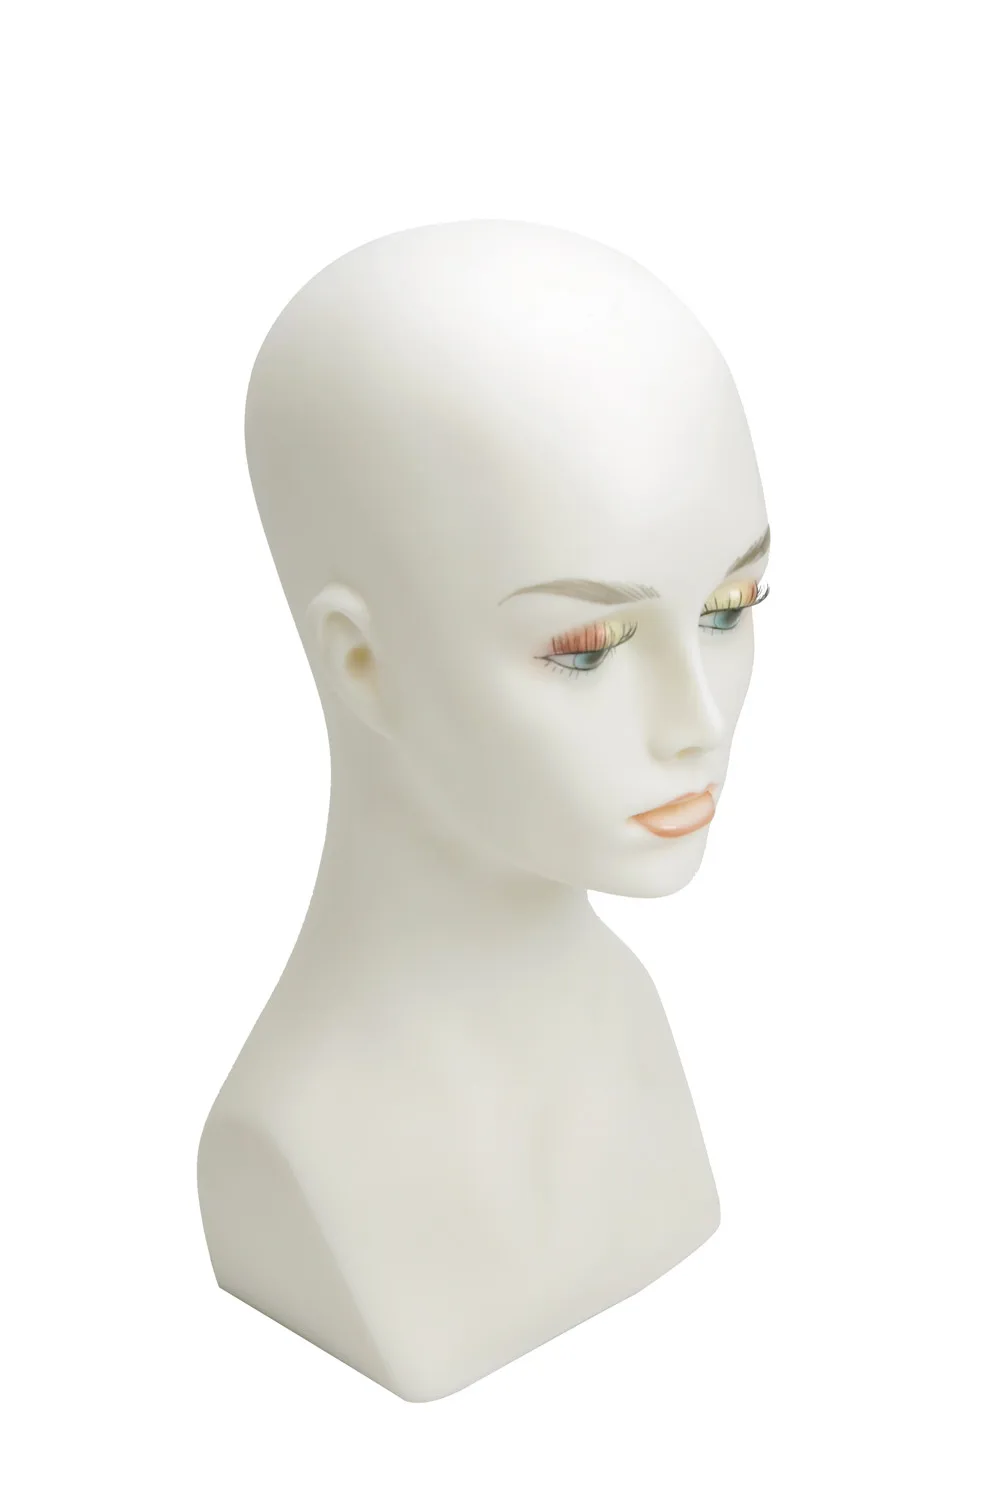 1" высокий-ПВХ пластиковый манекен голова манекена для ожерелье/крышка/парик дисплей PJH